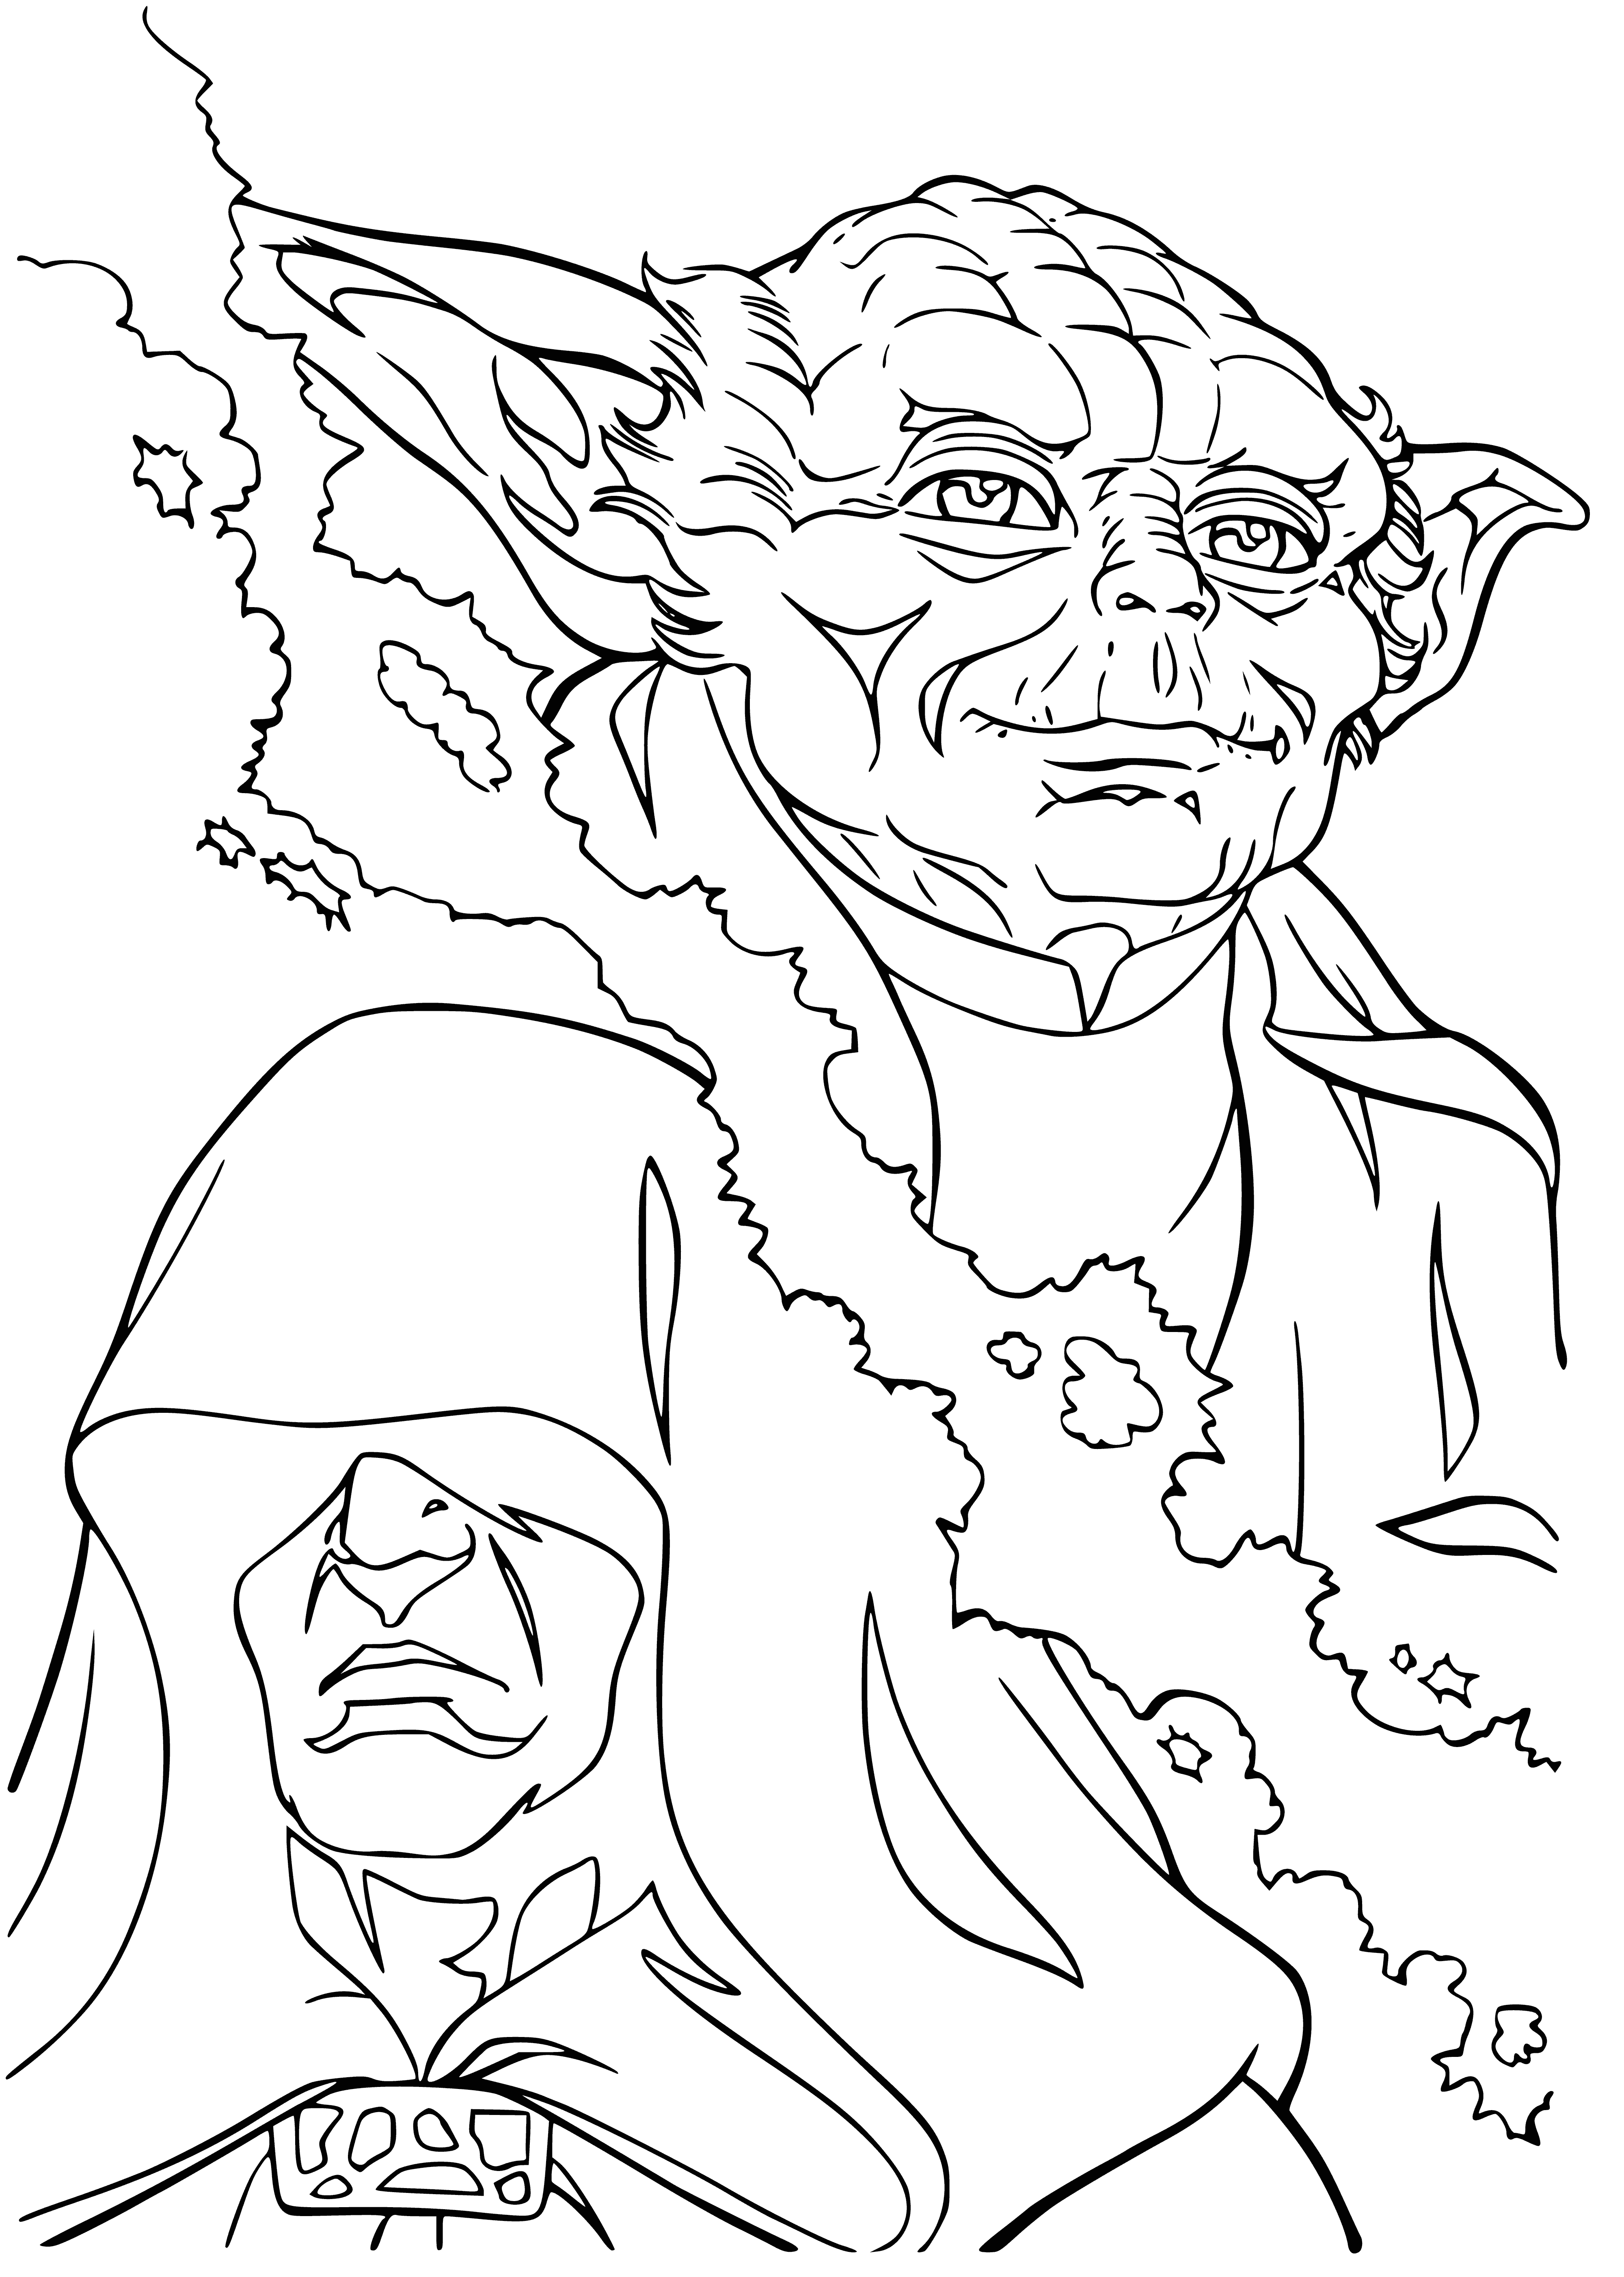 Darth Sidious and Master Yoda coloring page